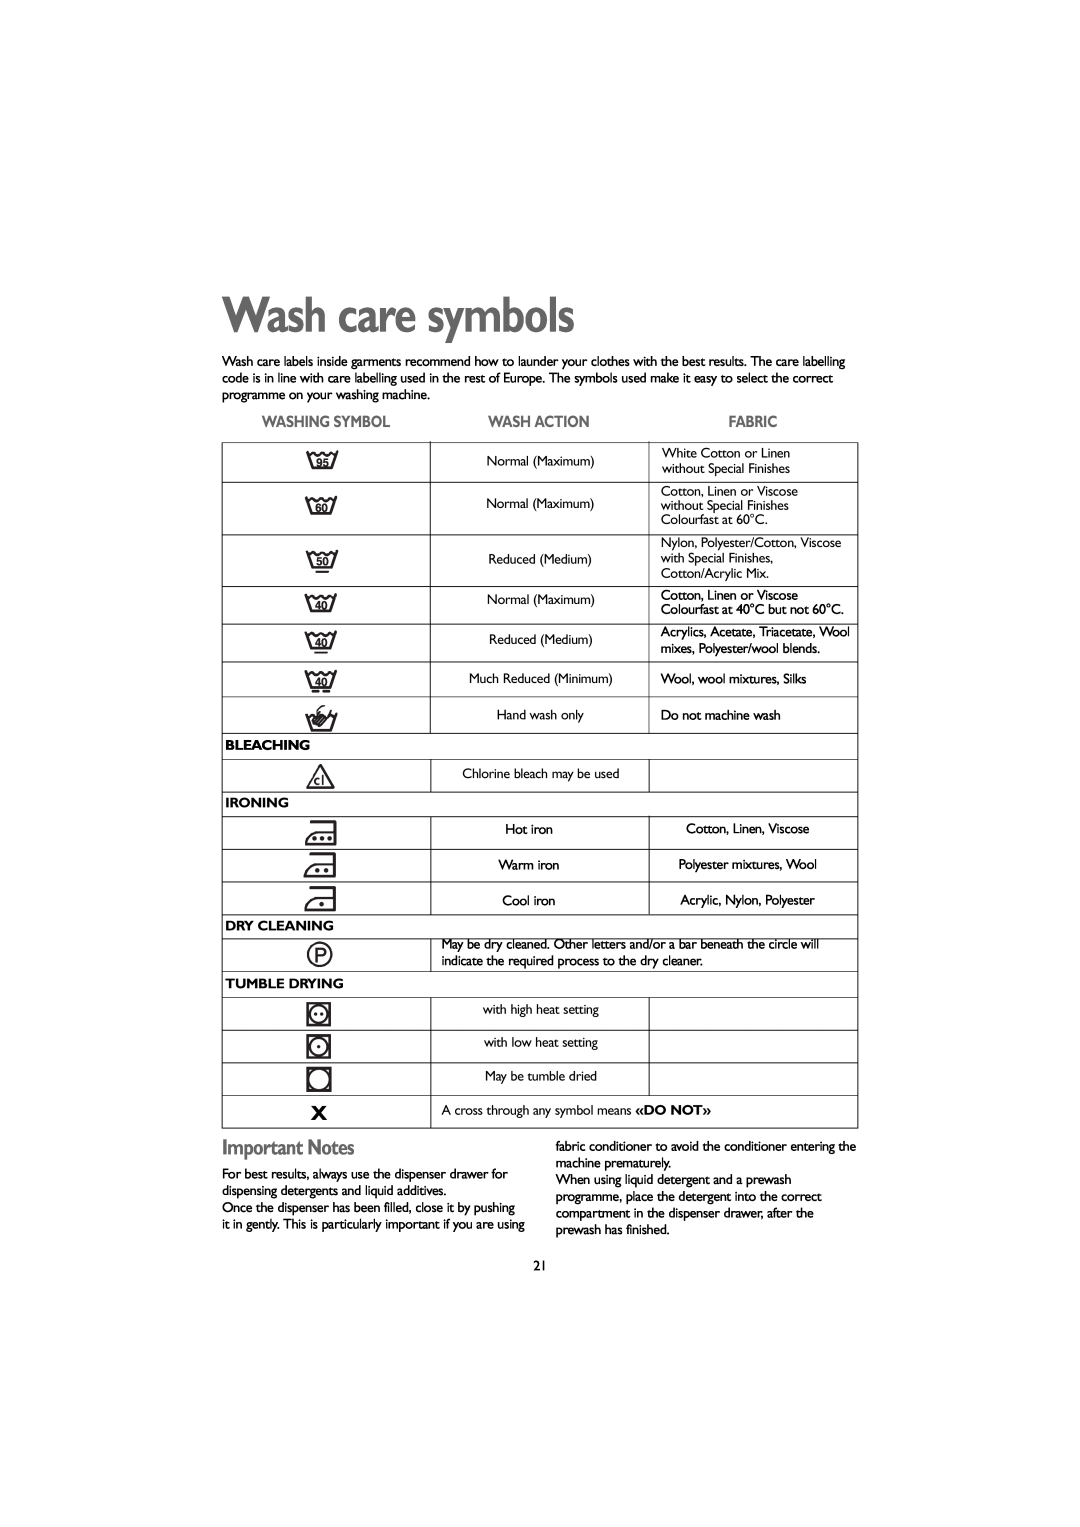 John Lewis JLWM 1203 instruction manual Wash care symbols, Important Notes, Washing Symbol, Wash Action, Fabric 